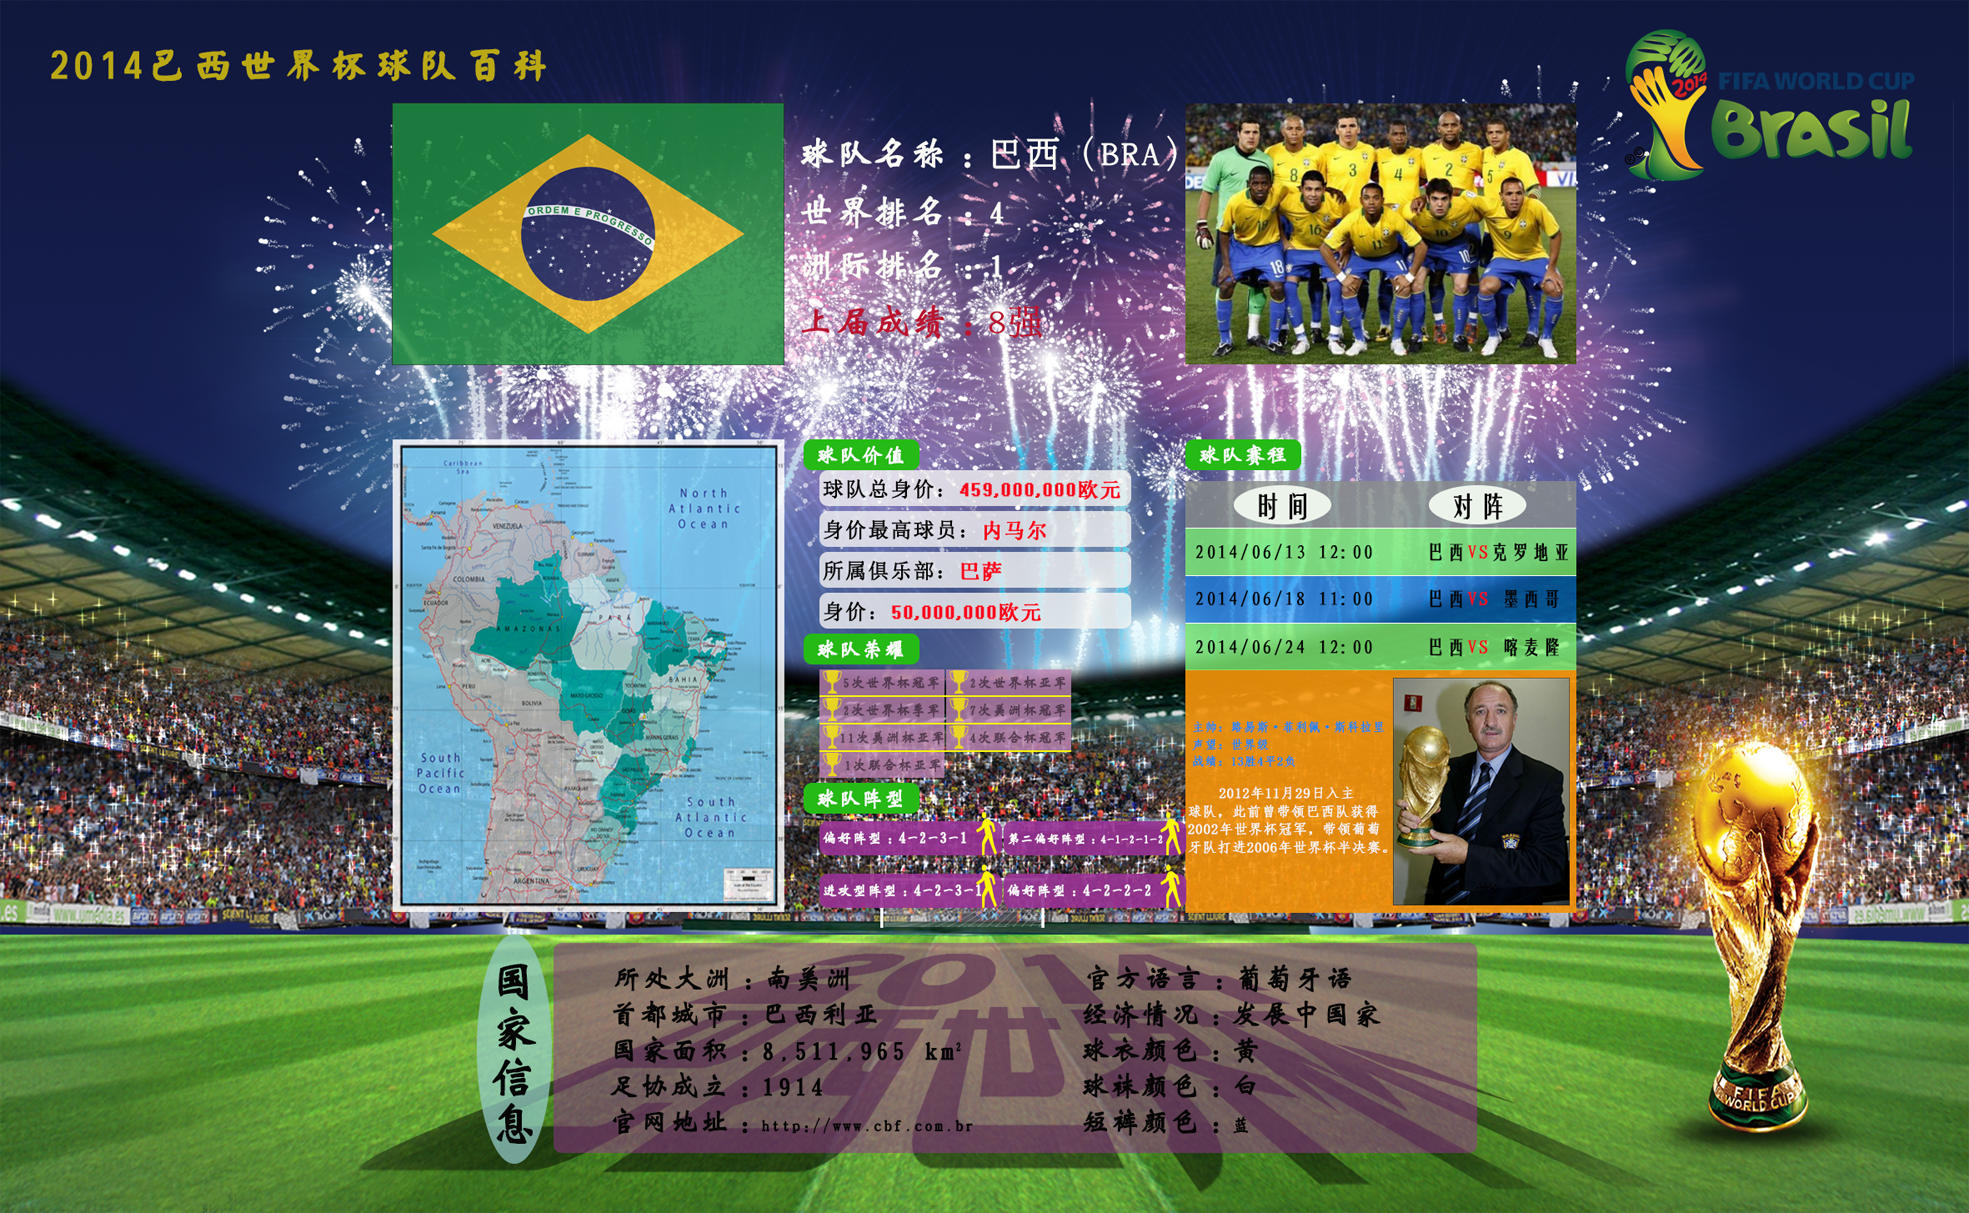 万博虚拟世界杯青春、黑马、卫冕卡塔尔寰宇杯半决赛来了(图1)